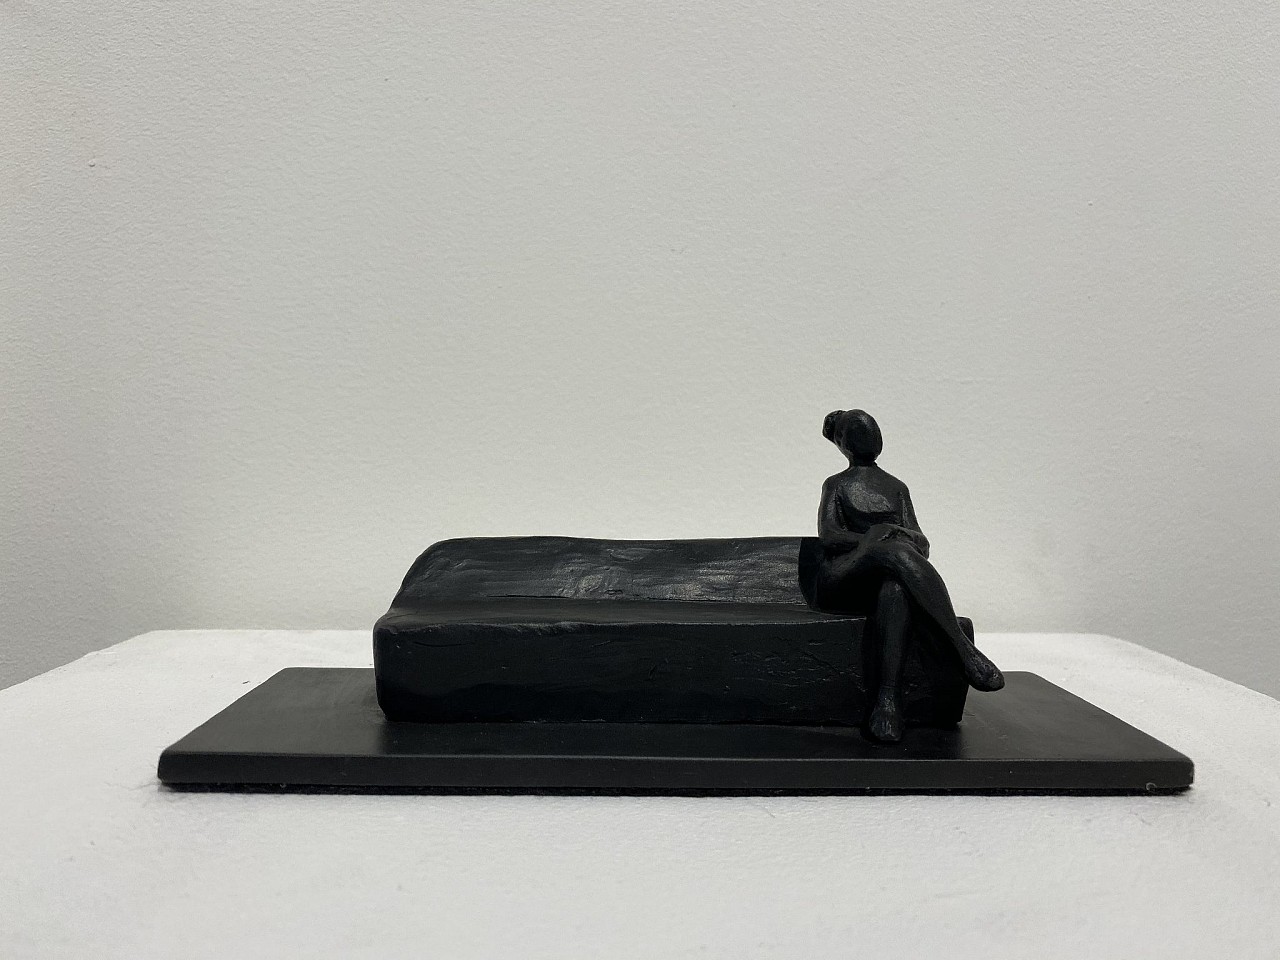 Jim Rennert, Commute (female), 2019
bronze, 3 x 8 x 3 in. (7.6 x 20.3 x 7.6 cm)